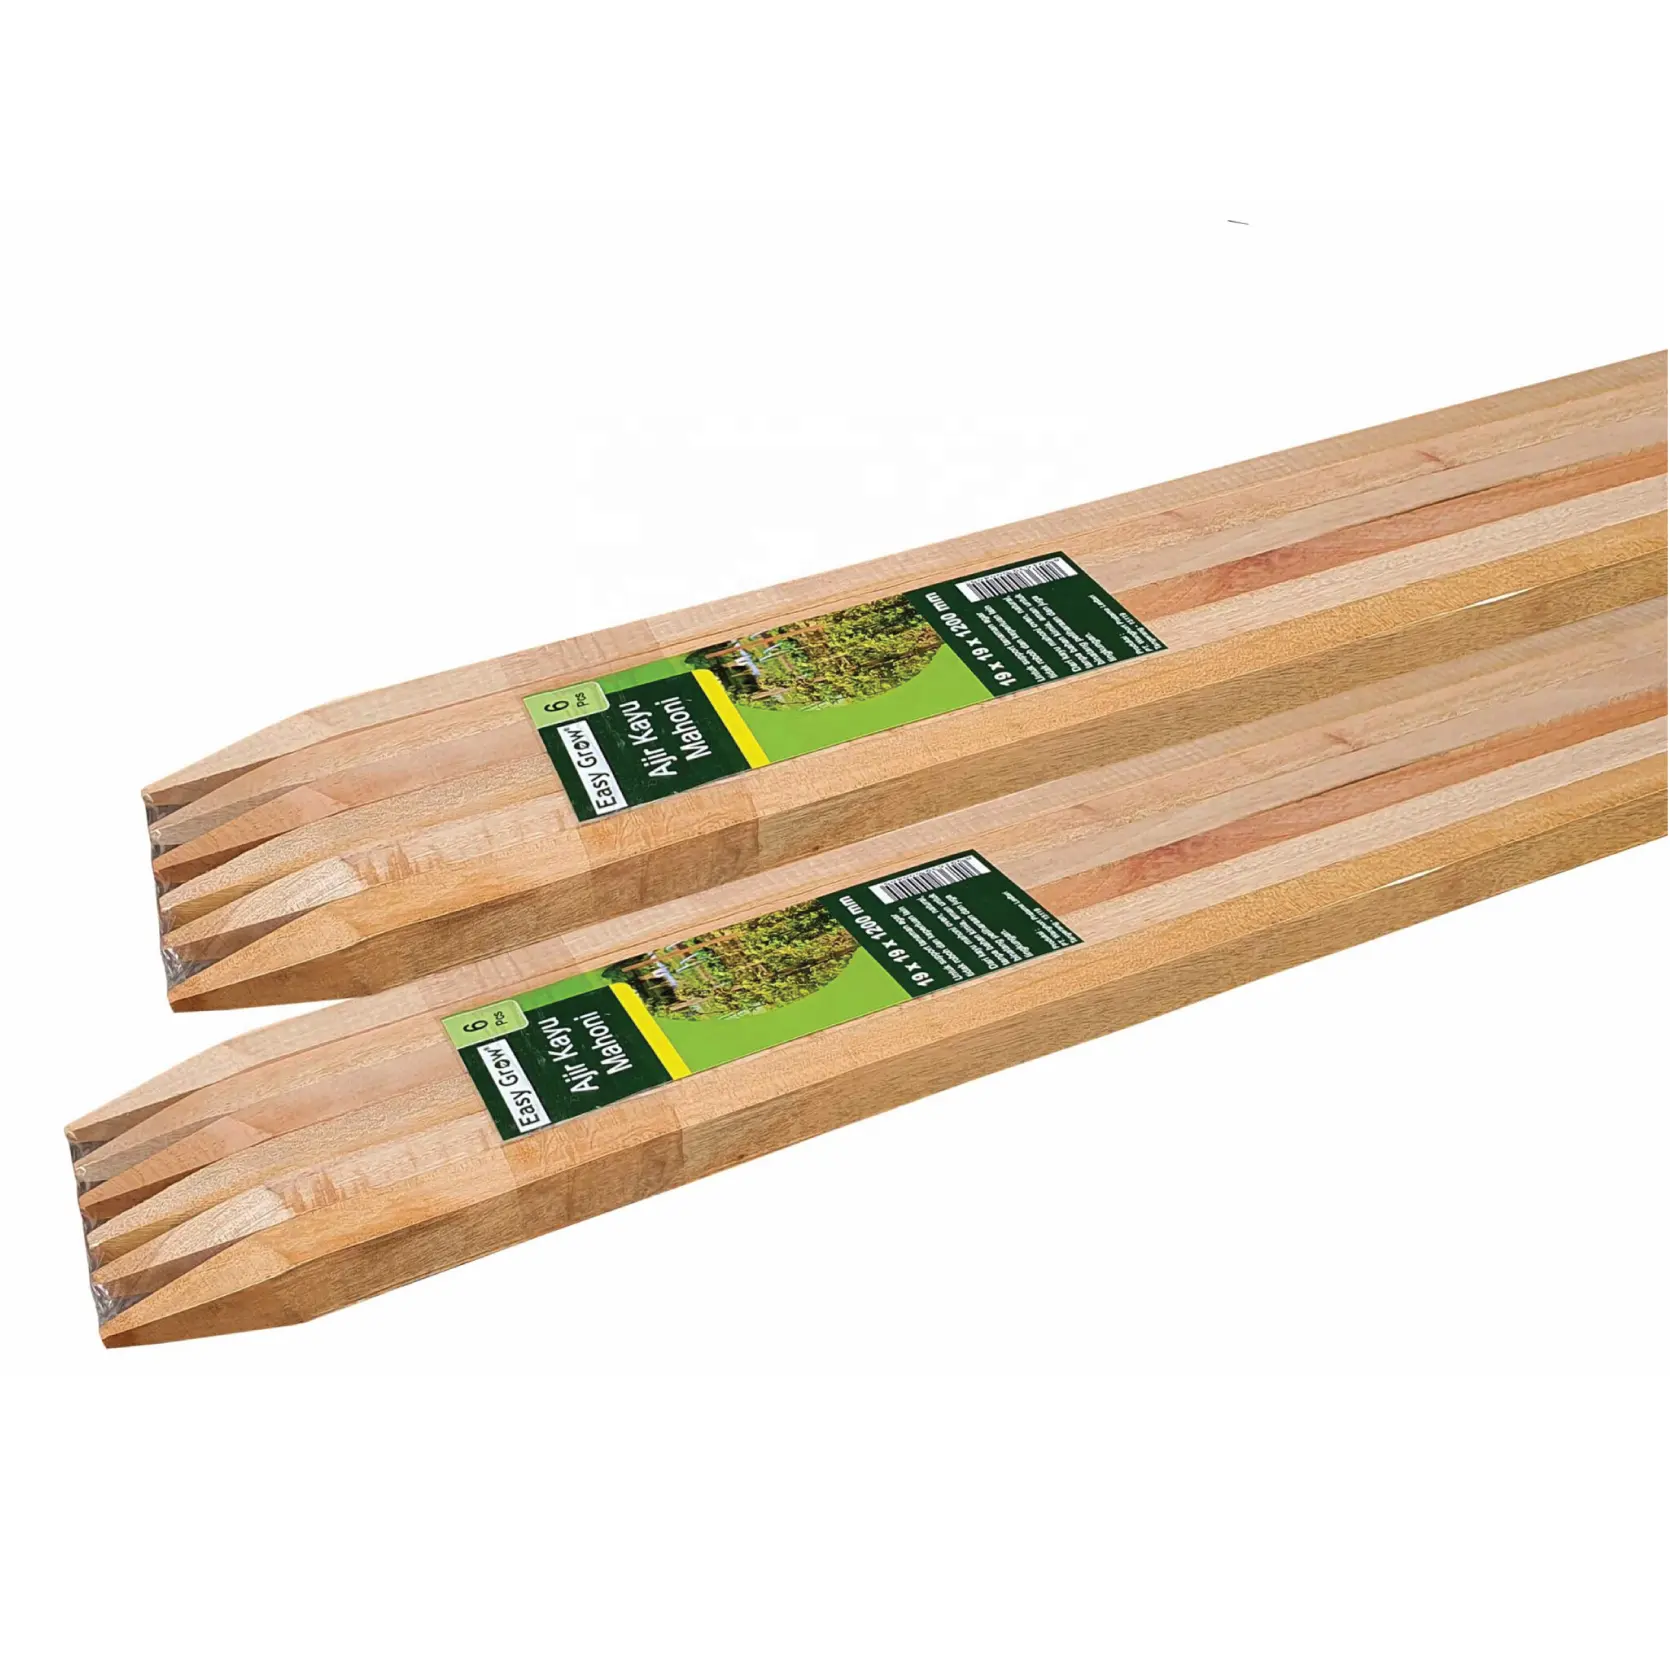 Apoio de madeira duro, premium, para planta de suporte de plantas, partes agrícolas de madeira para escalada